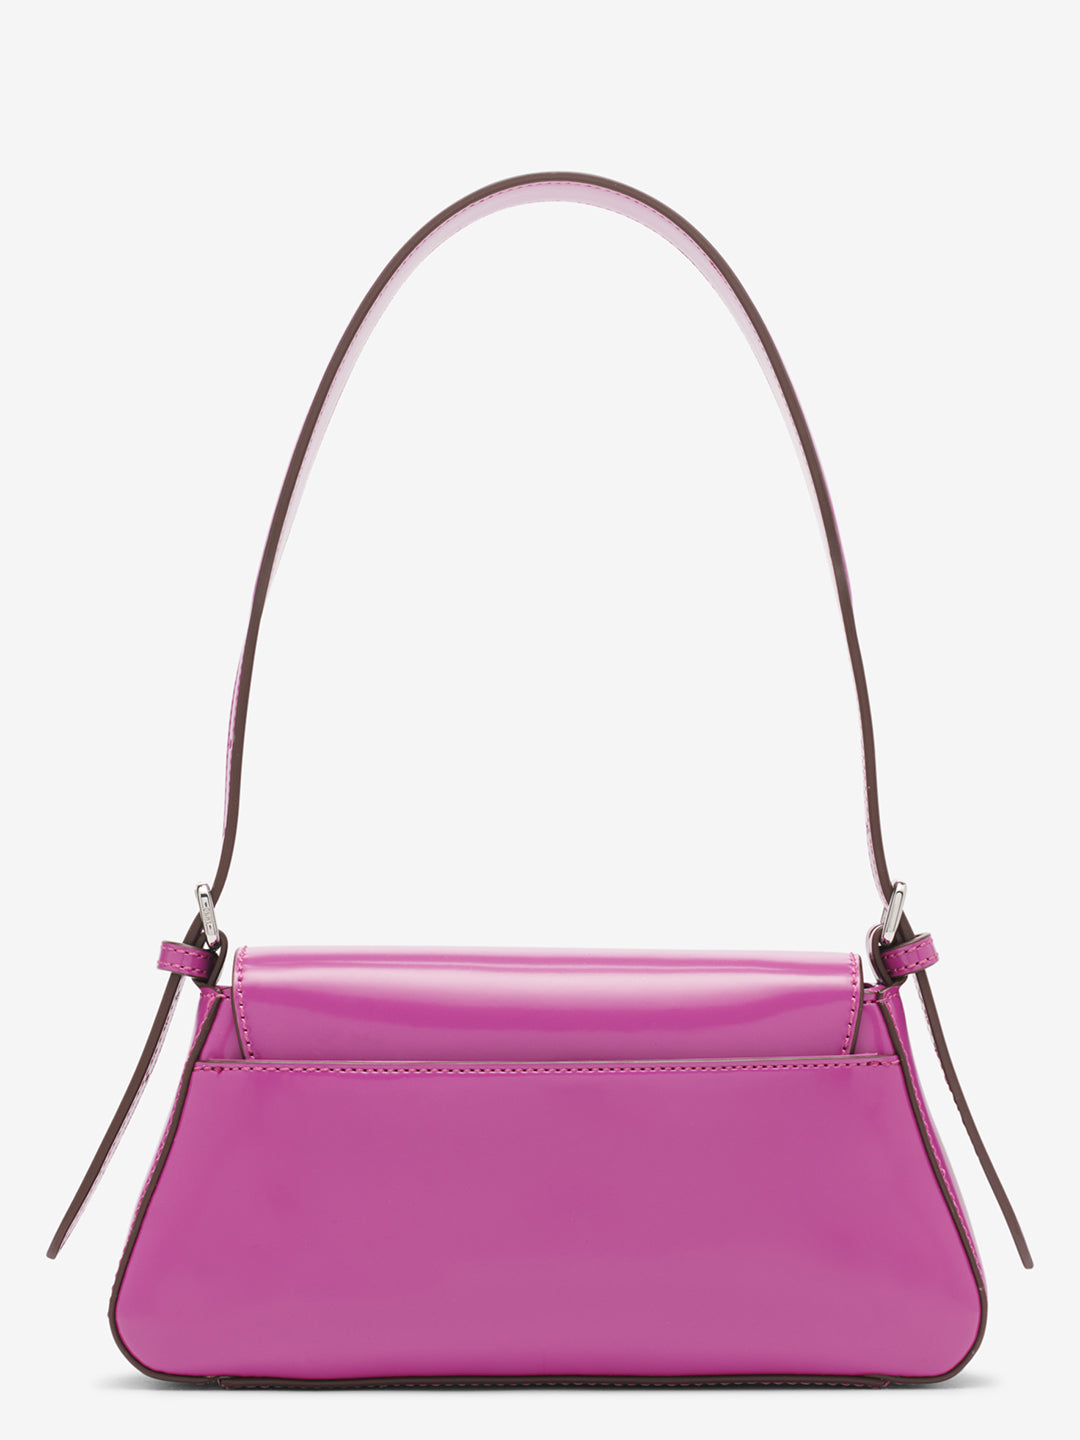 DKNY Women Pink Solid Handbag